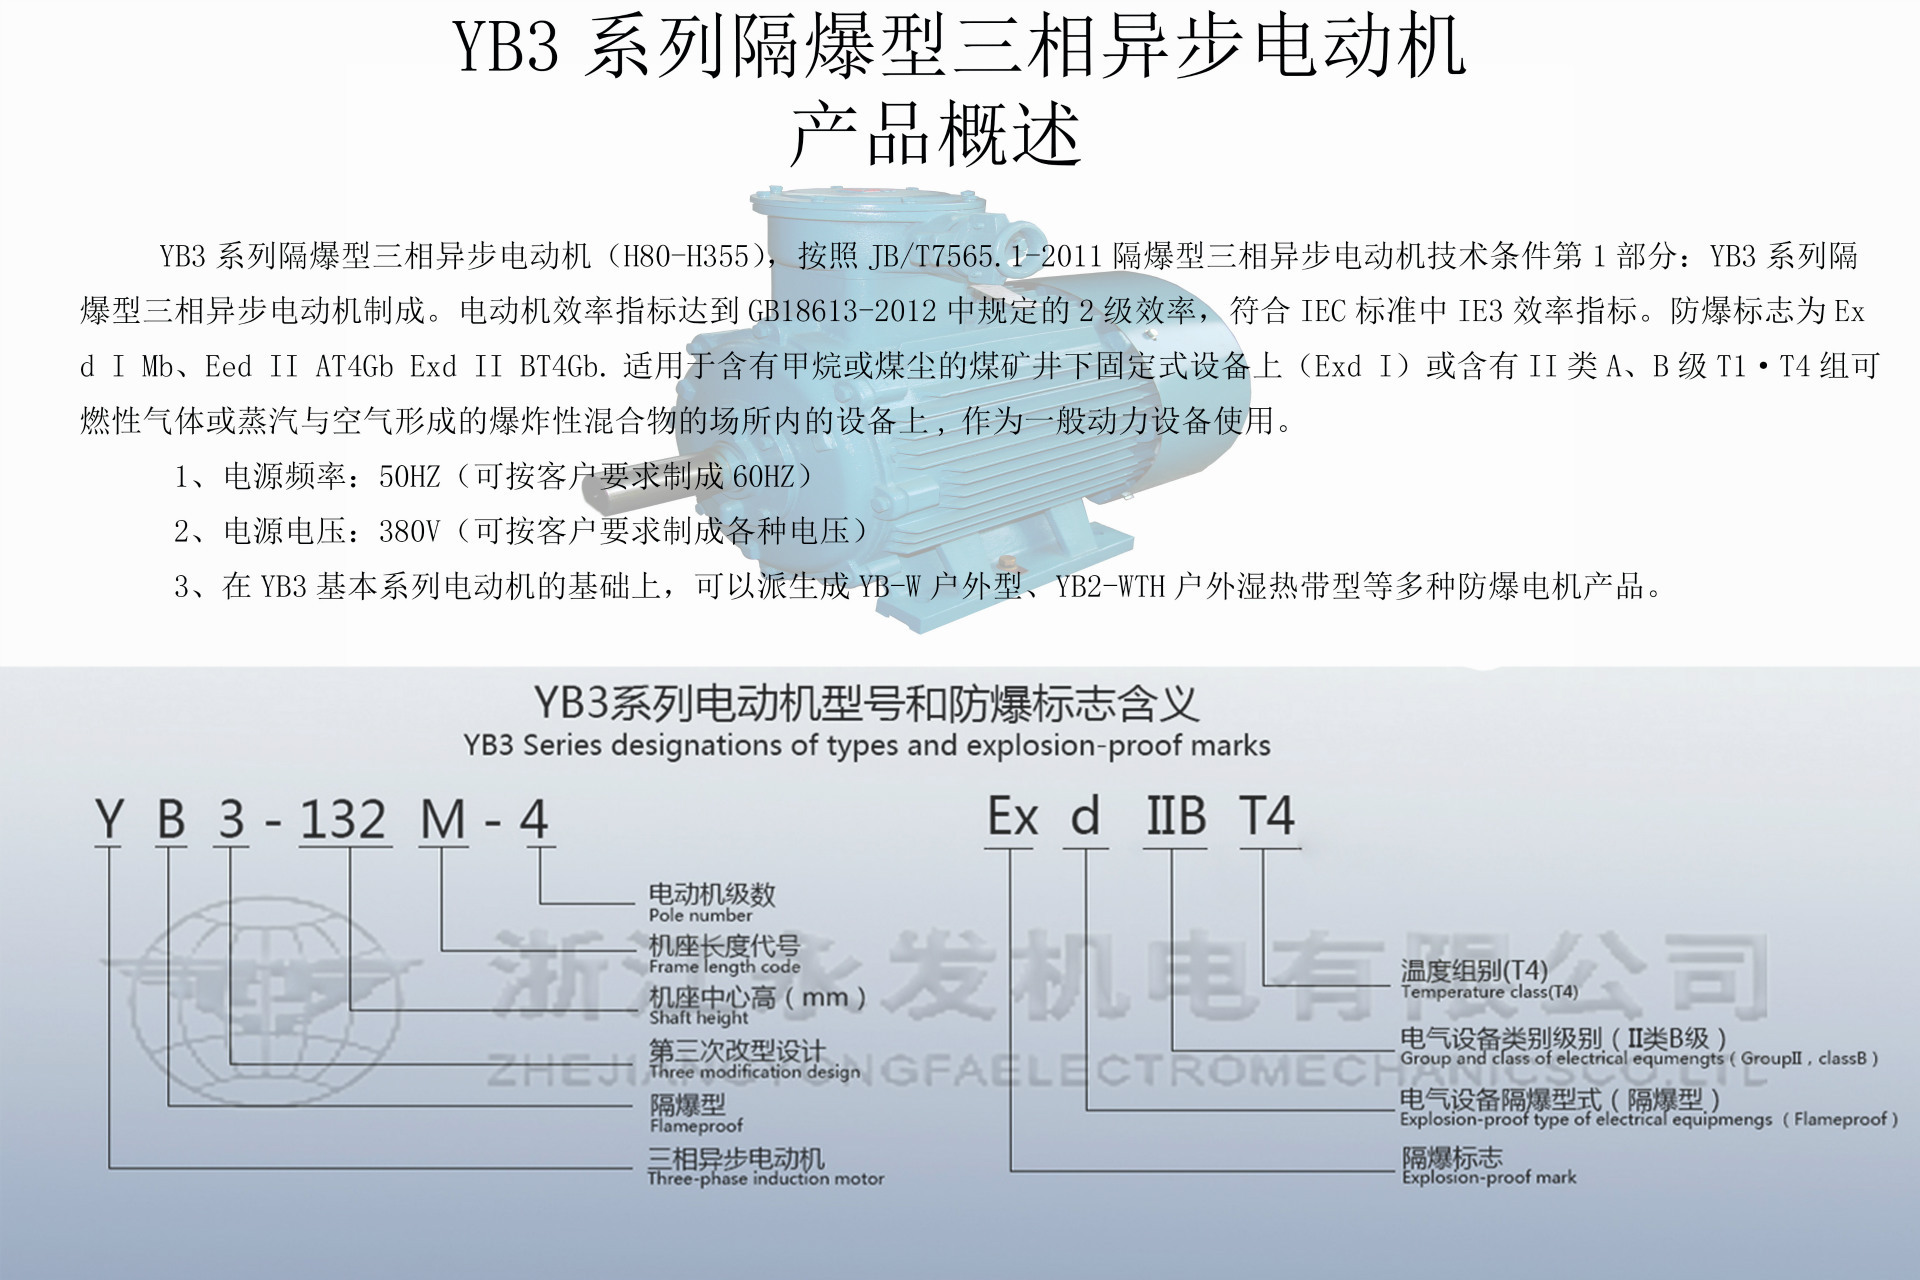 YB3电机产品概述